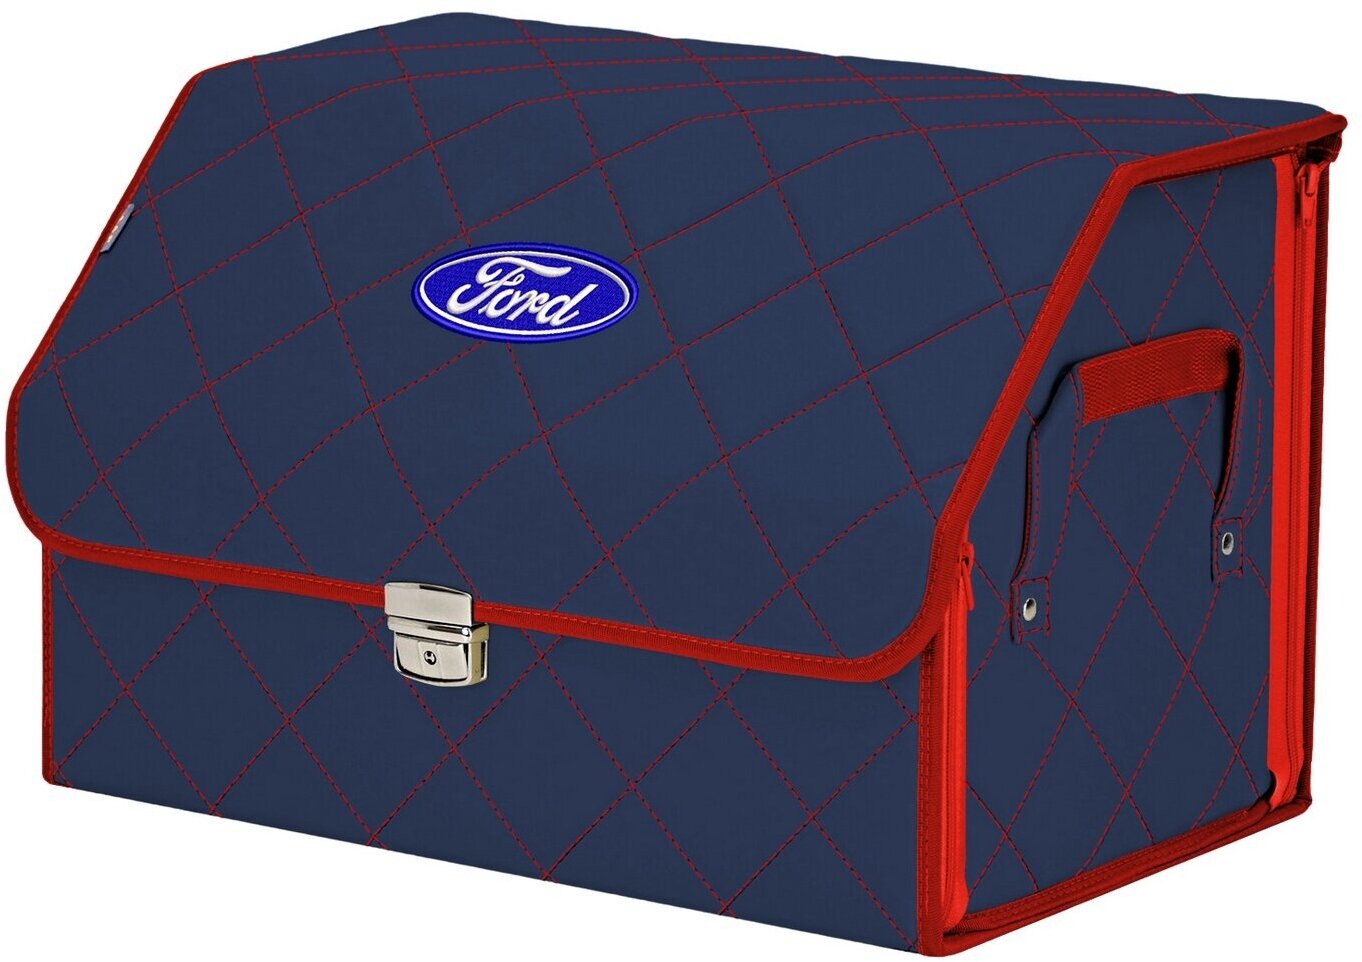 Органайзер-саквояж в багажник "Союз Премиум" (размер L). Цвет: синий с красной прострочкой Ромб и вышивкой Ford (Форд).